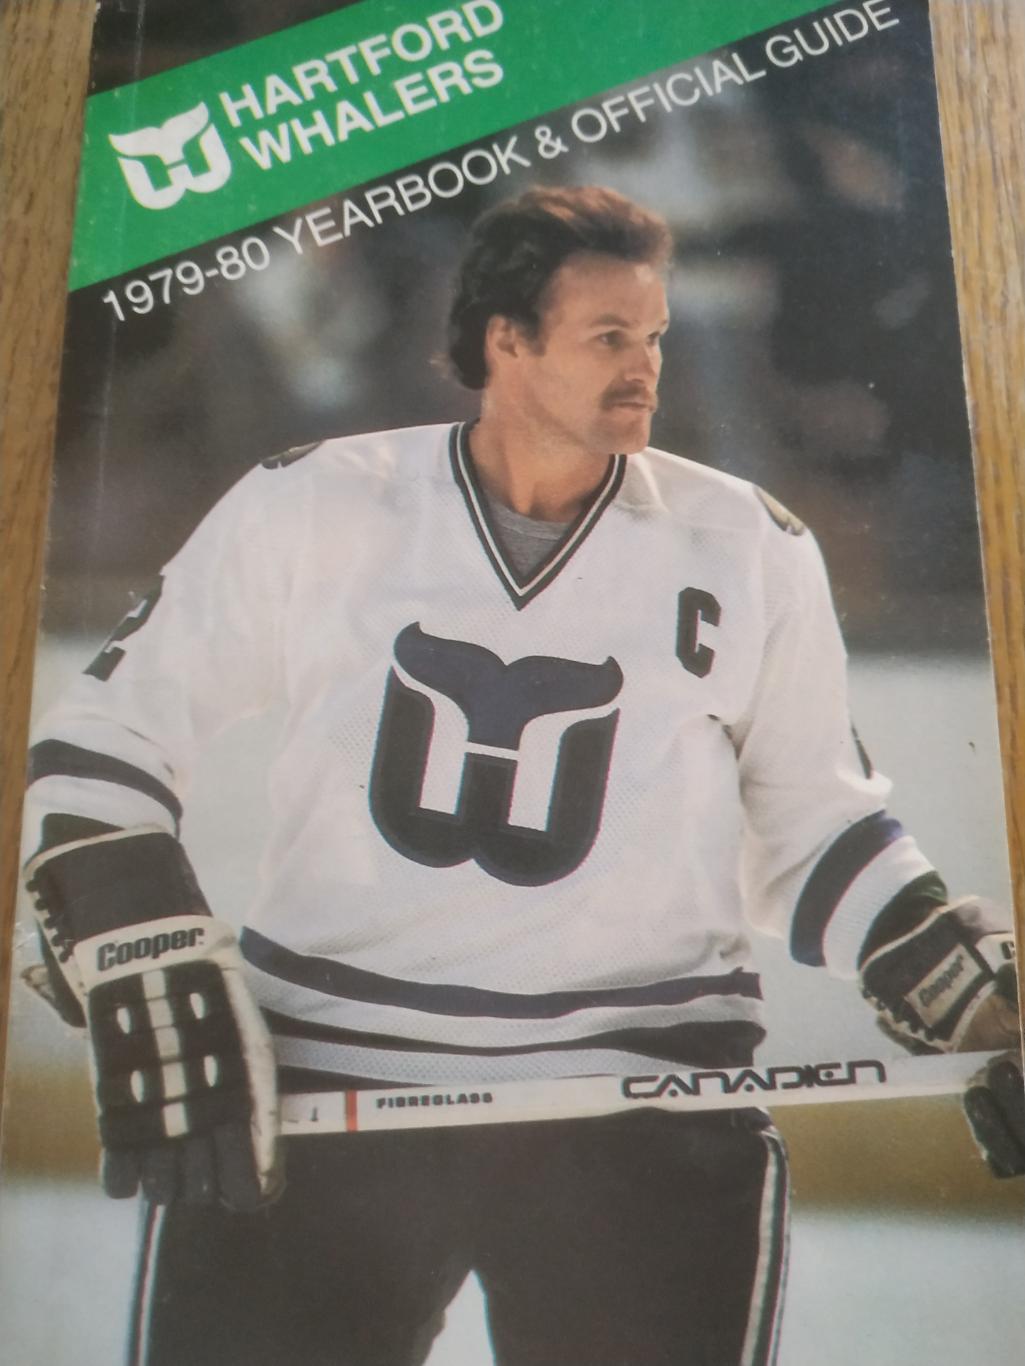 ХОККЕЙ СПРАВОЧНИК ЕЖЕГОДНИК НХЛ 1979-80 NHL HARTFORD WHALERS YEARBOOK GUIDE